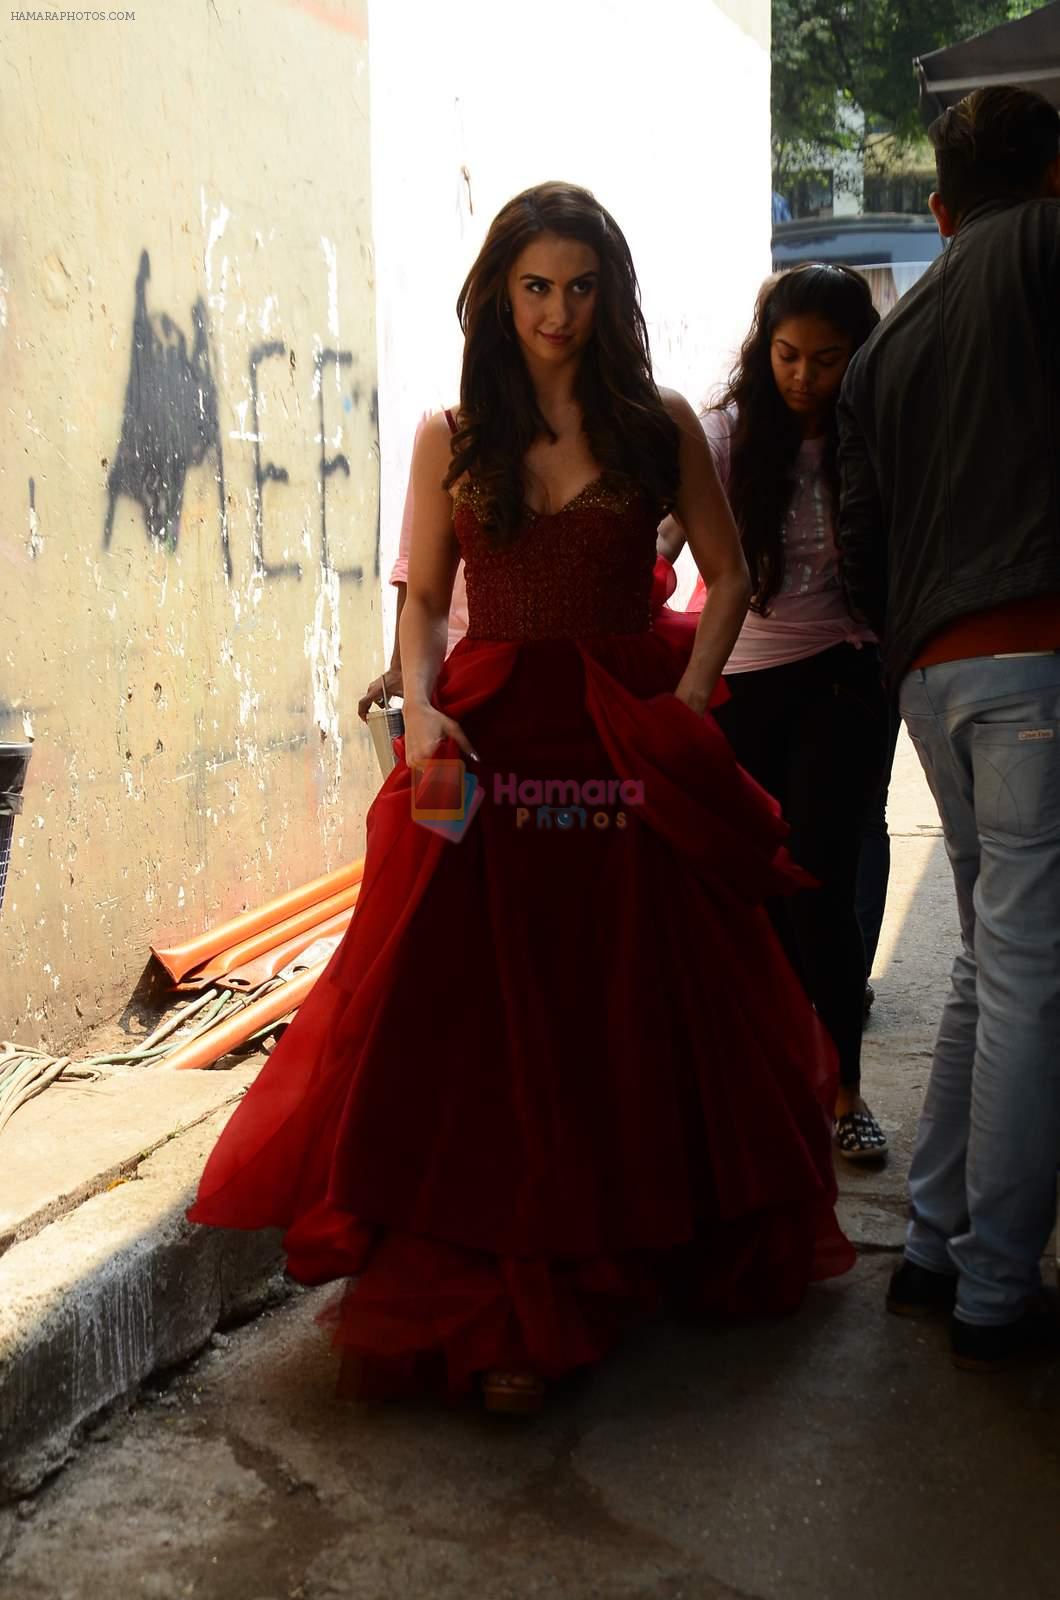 Lauren Gottlieb at Jhalak dikhhla jaa reloaded grand finale shoot in Filmistan on 7th Oct 2015